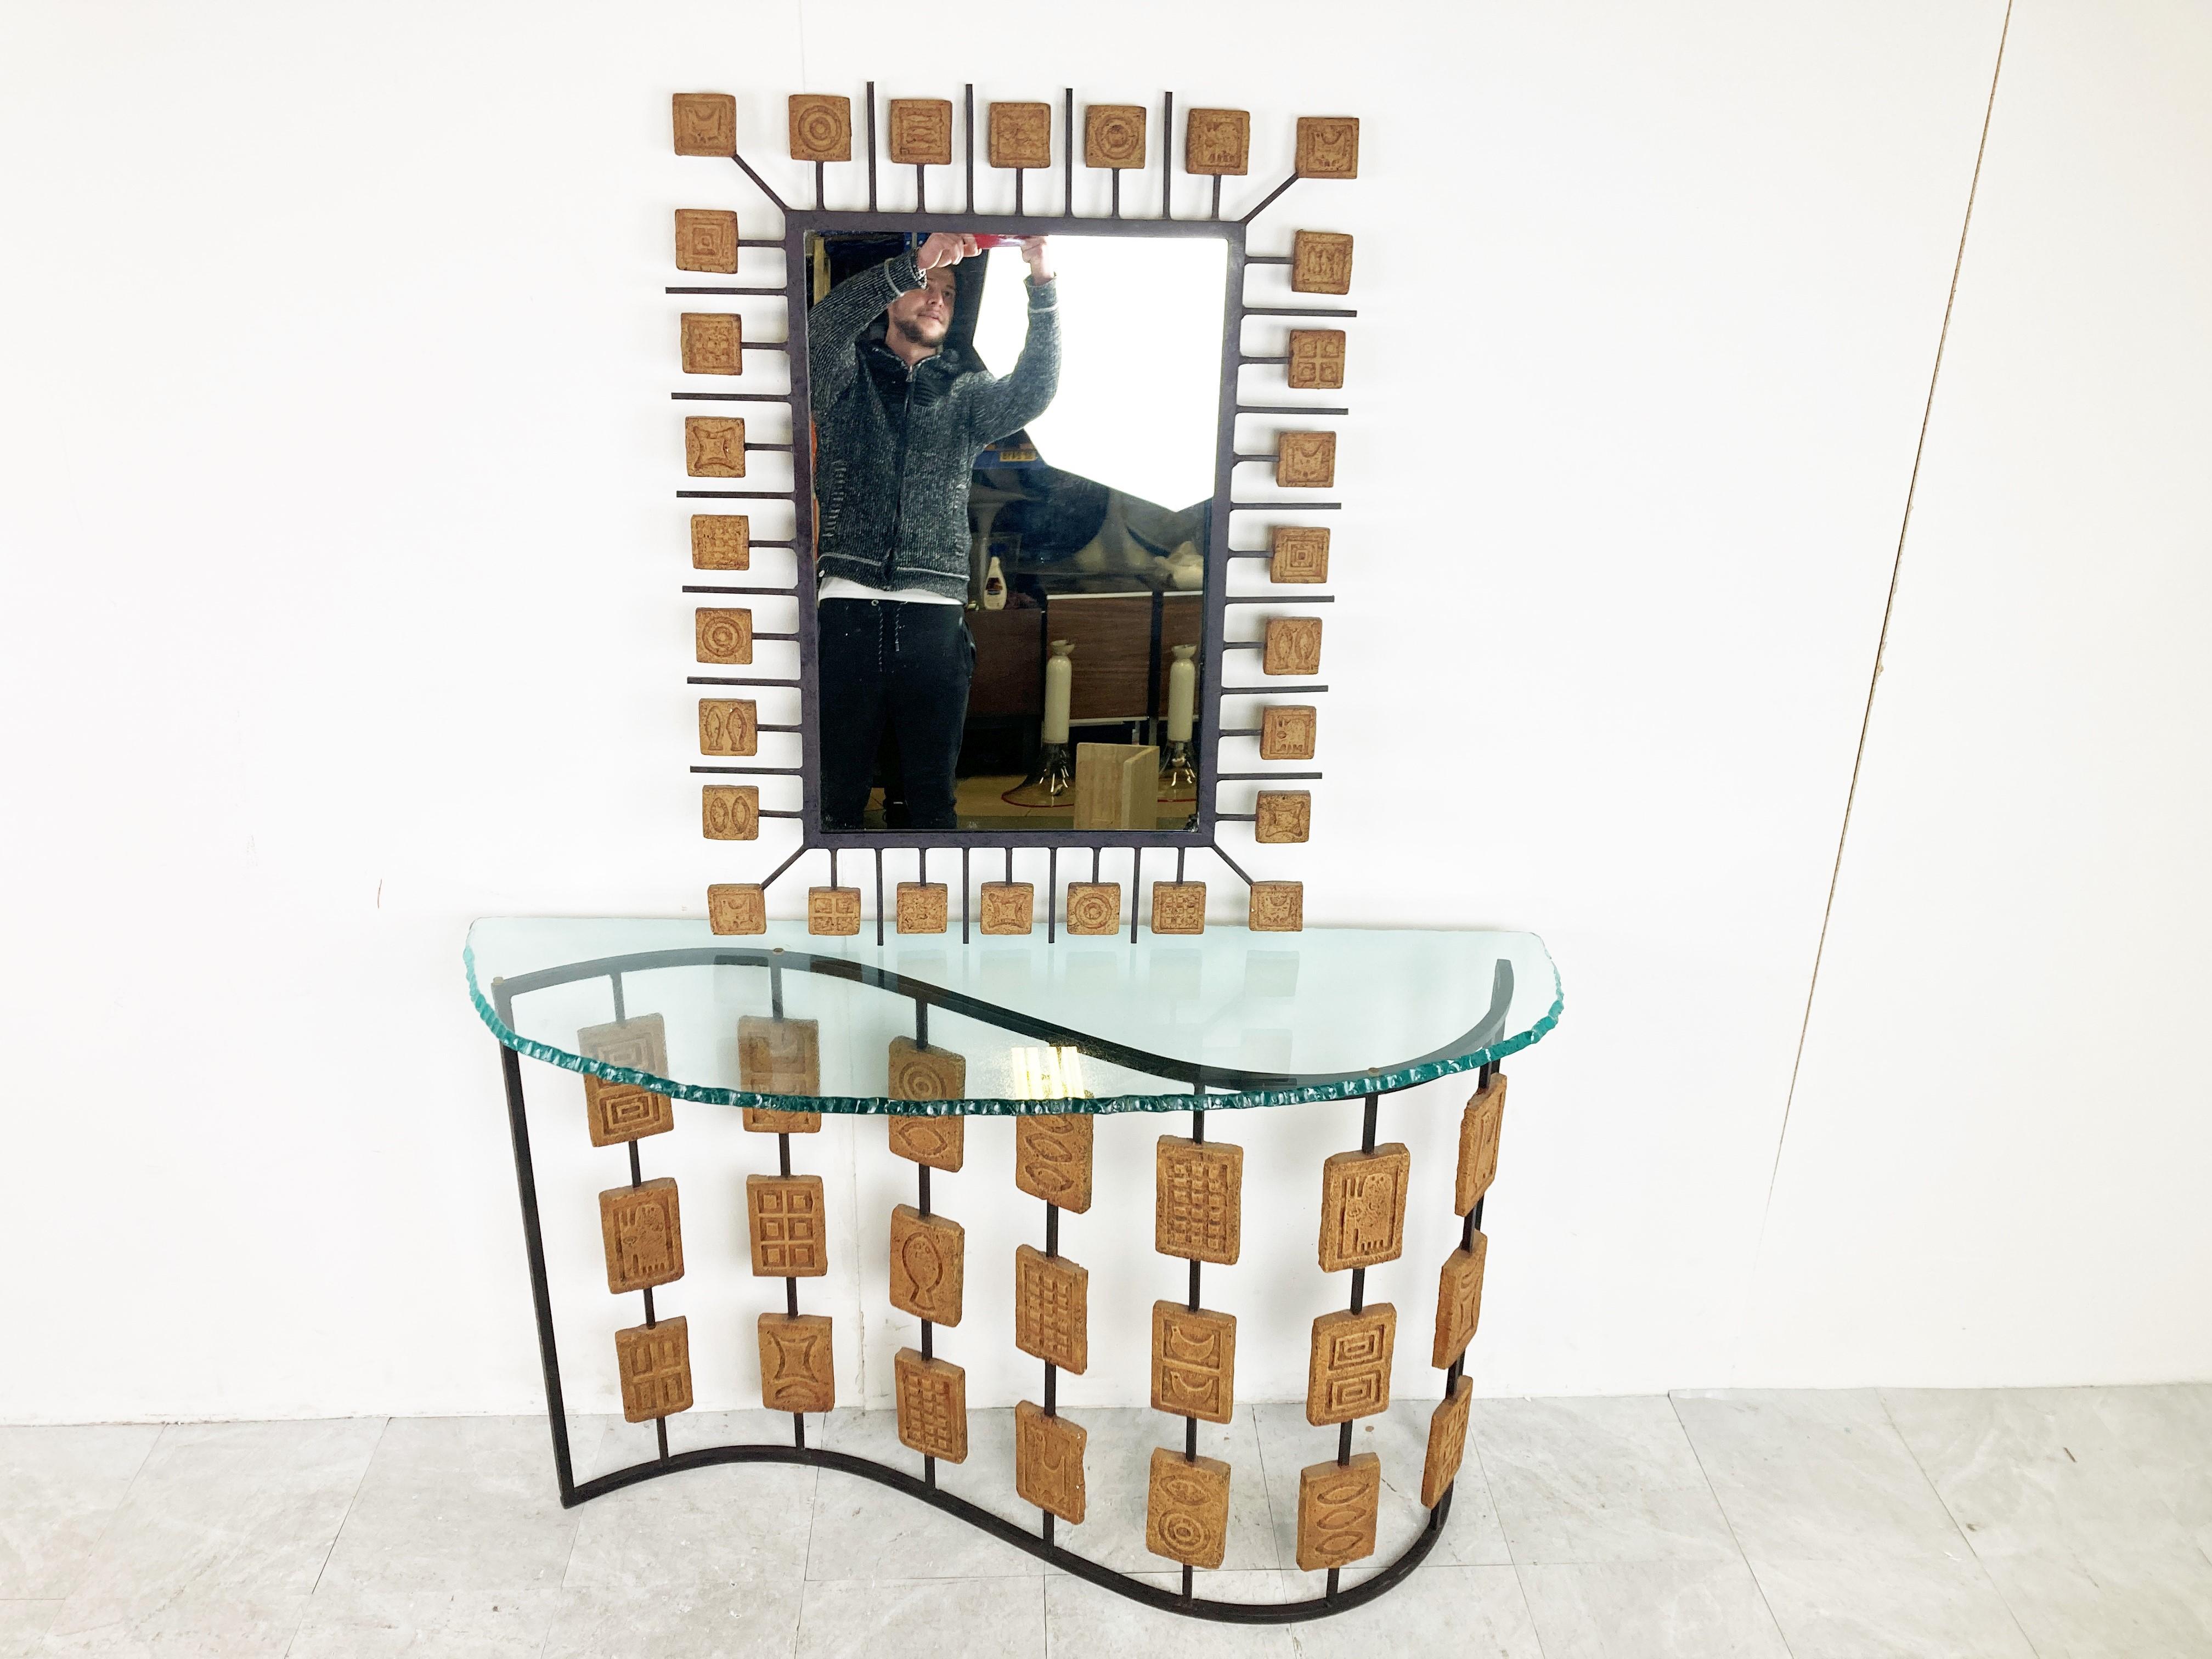 Sehr seltener Konsolentisch im brutalistischen Stil mit Spiegel von Mario Giani.

Die Konsole ist mit quadratischen Terrakottasteinen verziert und hat einen schwarzen Stahlrahmen. Auch die Tischplatte ist sehr einzigartig.

Auffälliges